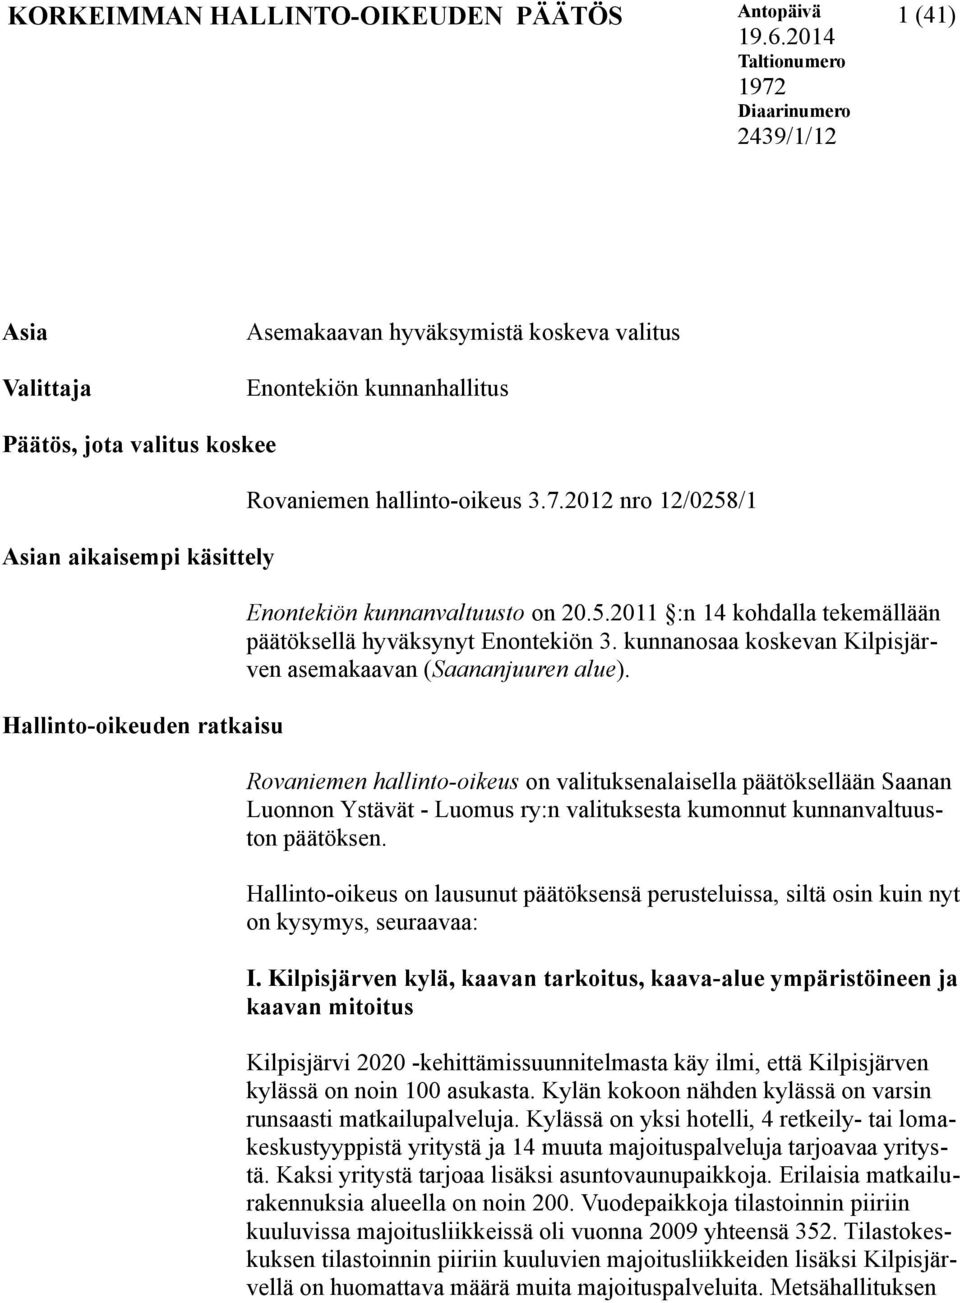 Hallinto-oikeuden ratkaisu Rovaniemen hallinto-oikeus 3.7.2012 nro 12/0258/1 Enontekiön kunnanvaltuusto on 20.5.2011 :n 14 kohdalla tekemällään päätöksellä hyväksynyt Enontekiön 3.